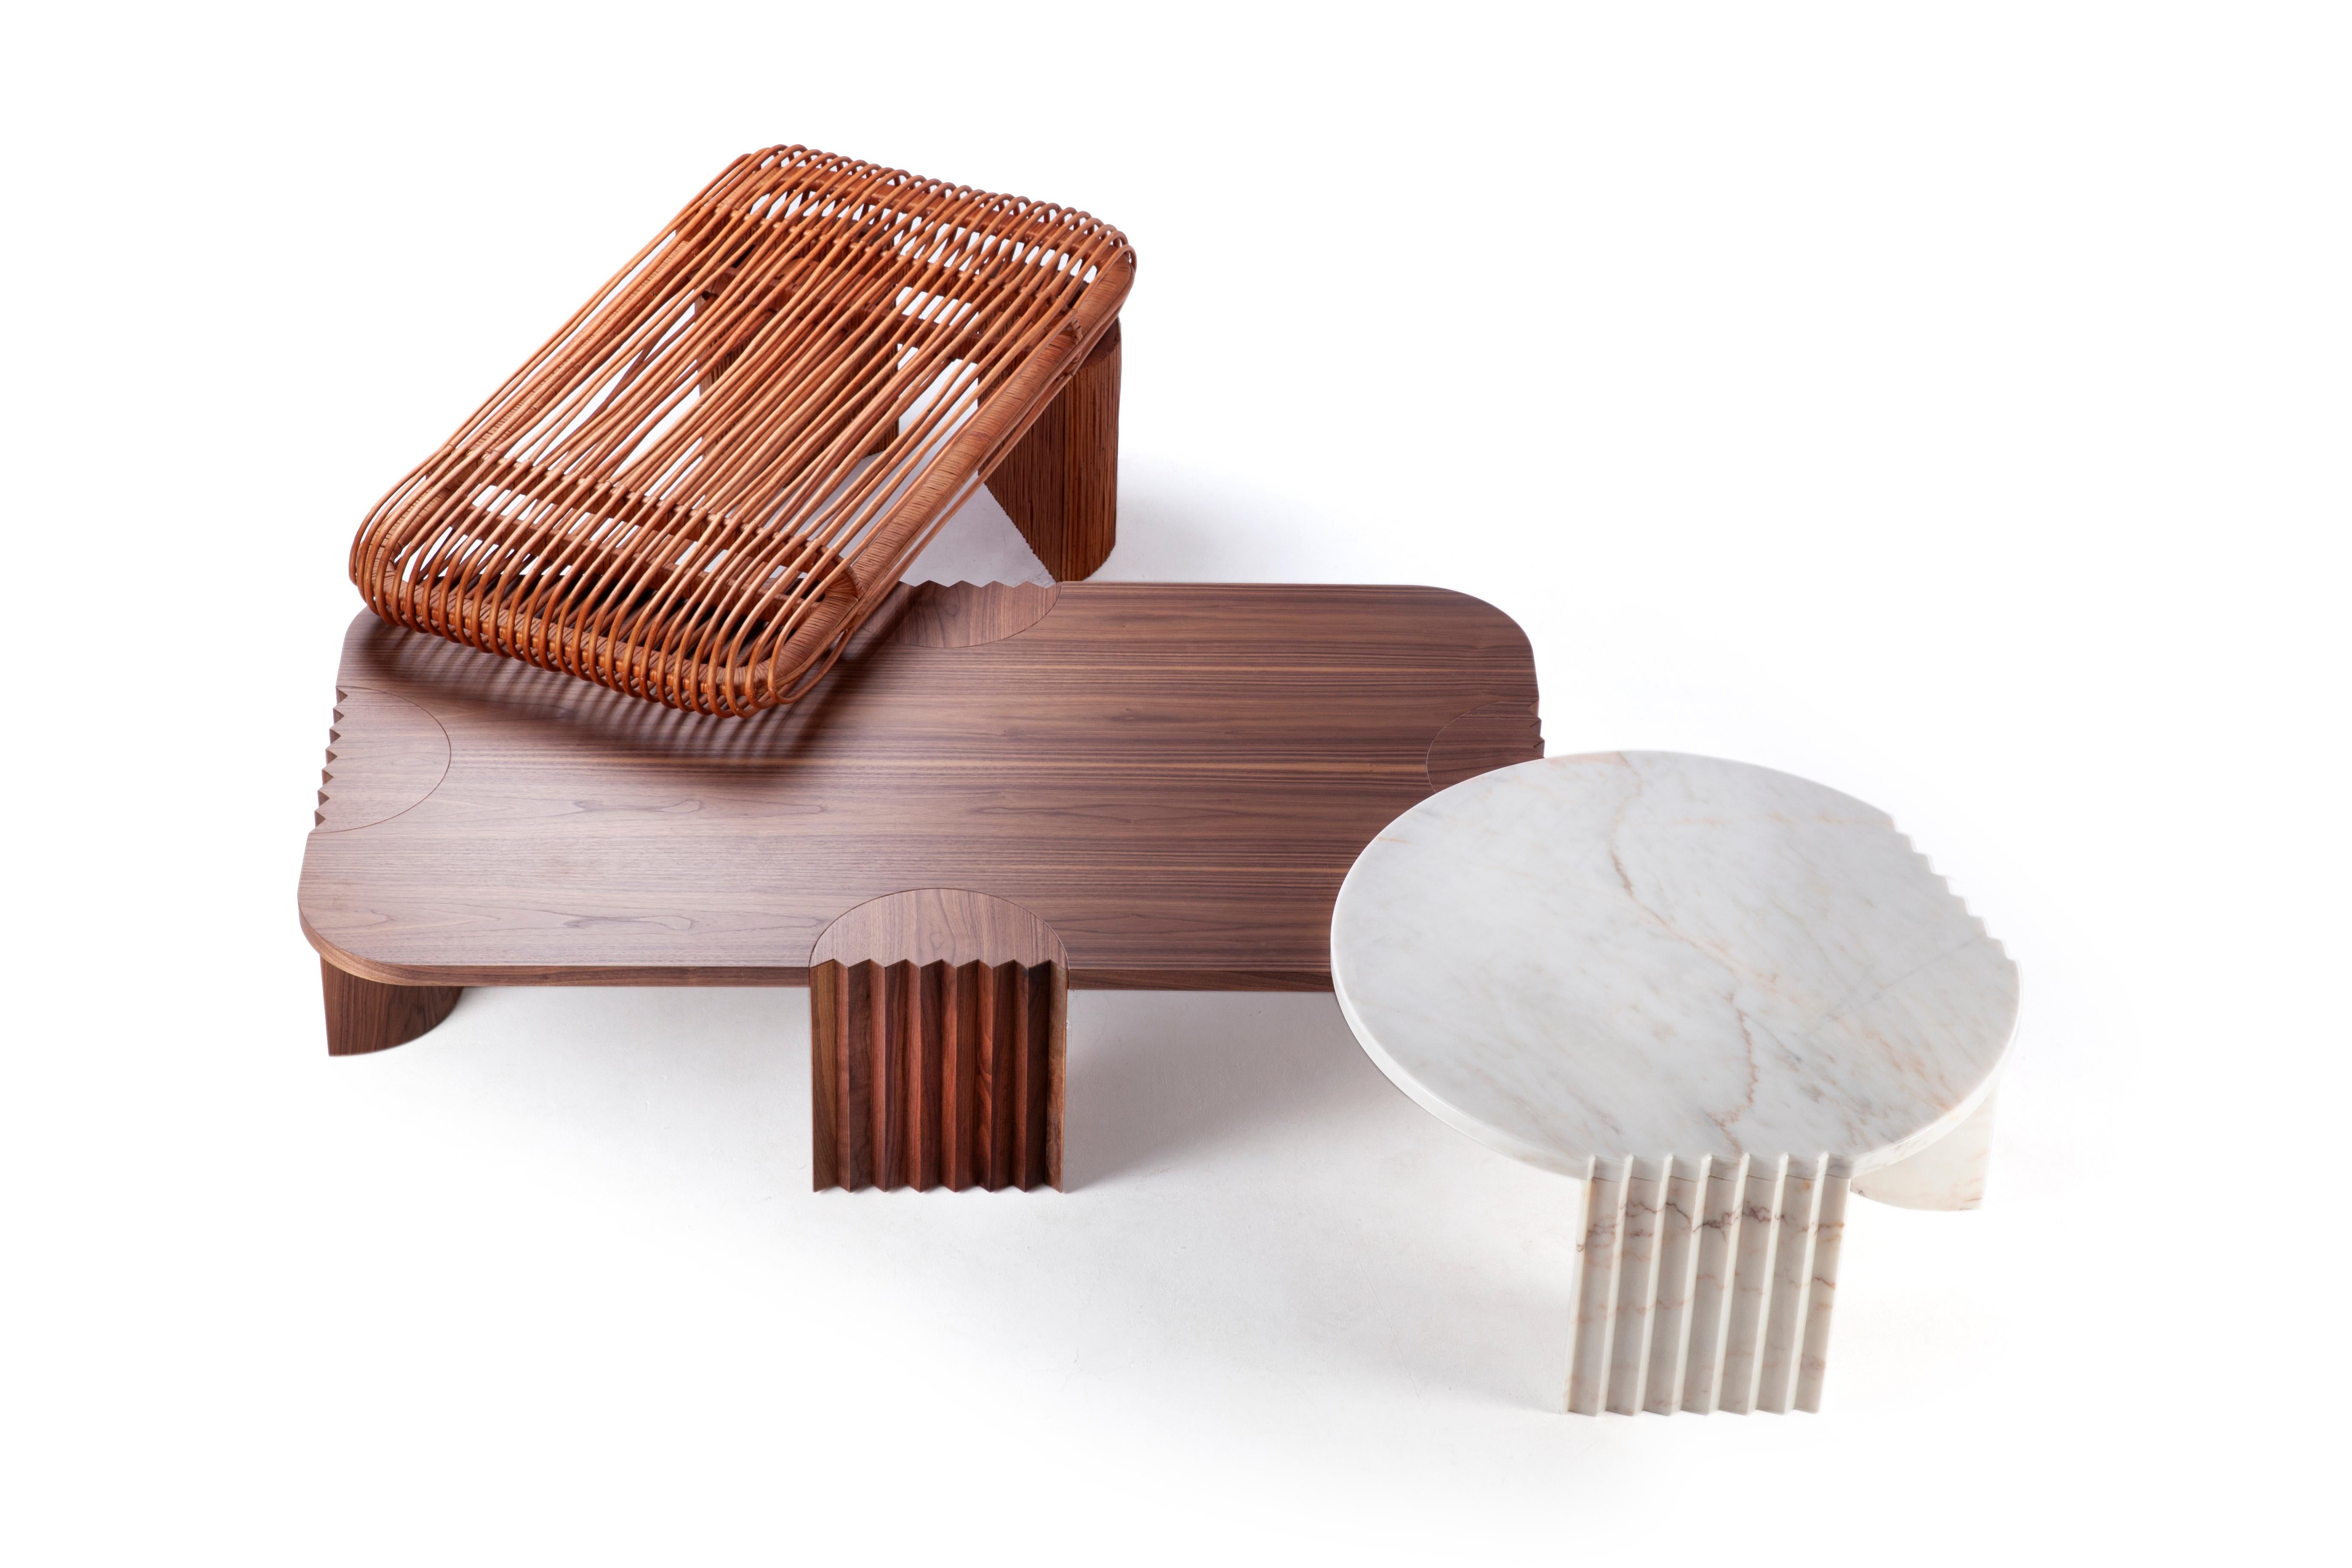 Einzigartiger Caravel-Holz-Mitteltisch von Collector
Abmessungen: B 120 x T 61,5 x H 50 cm
MATERIALIEN: Holz 
Andere MATERIALs sind verfügbar.

Die Marke Collector hat sich zum Ziel gesetzt, Teil des täglichen Lebens zu sein, indem sie die